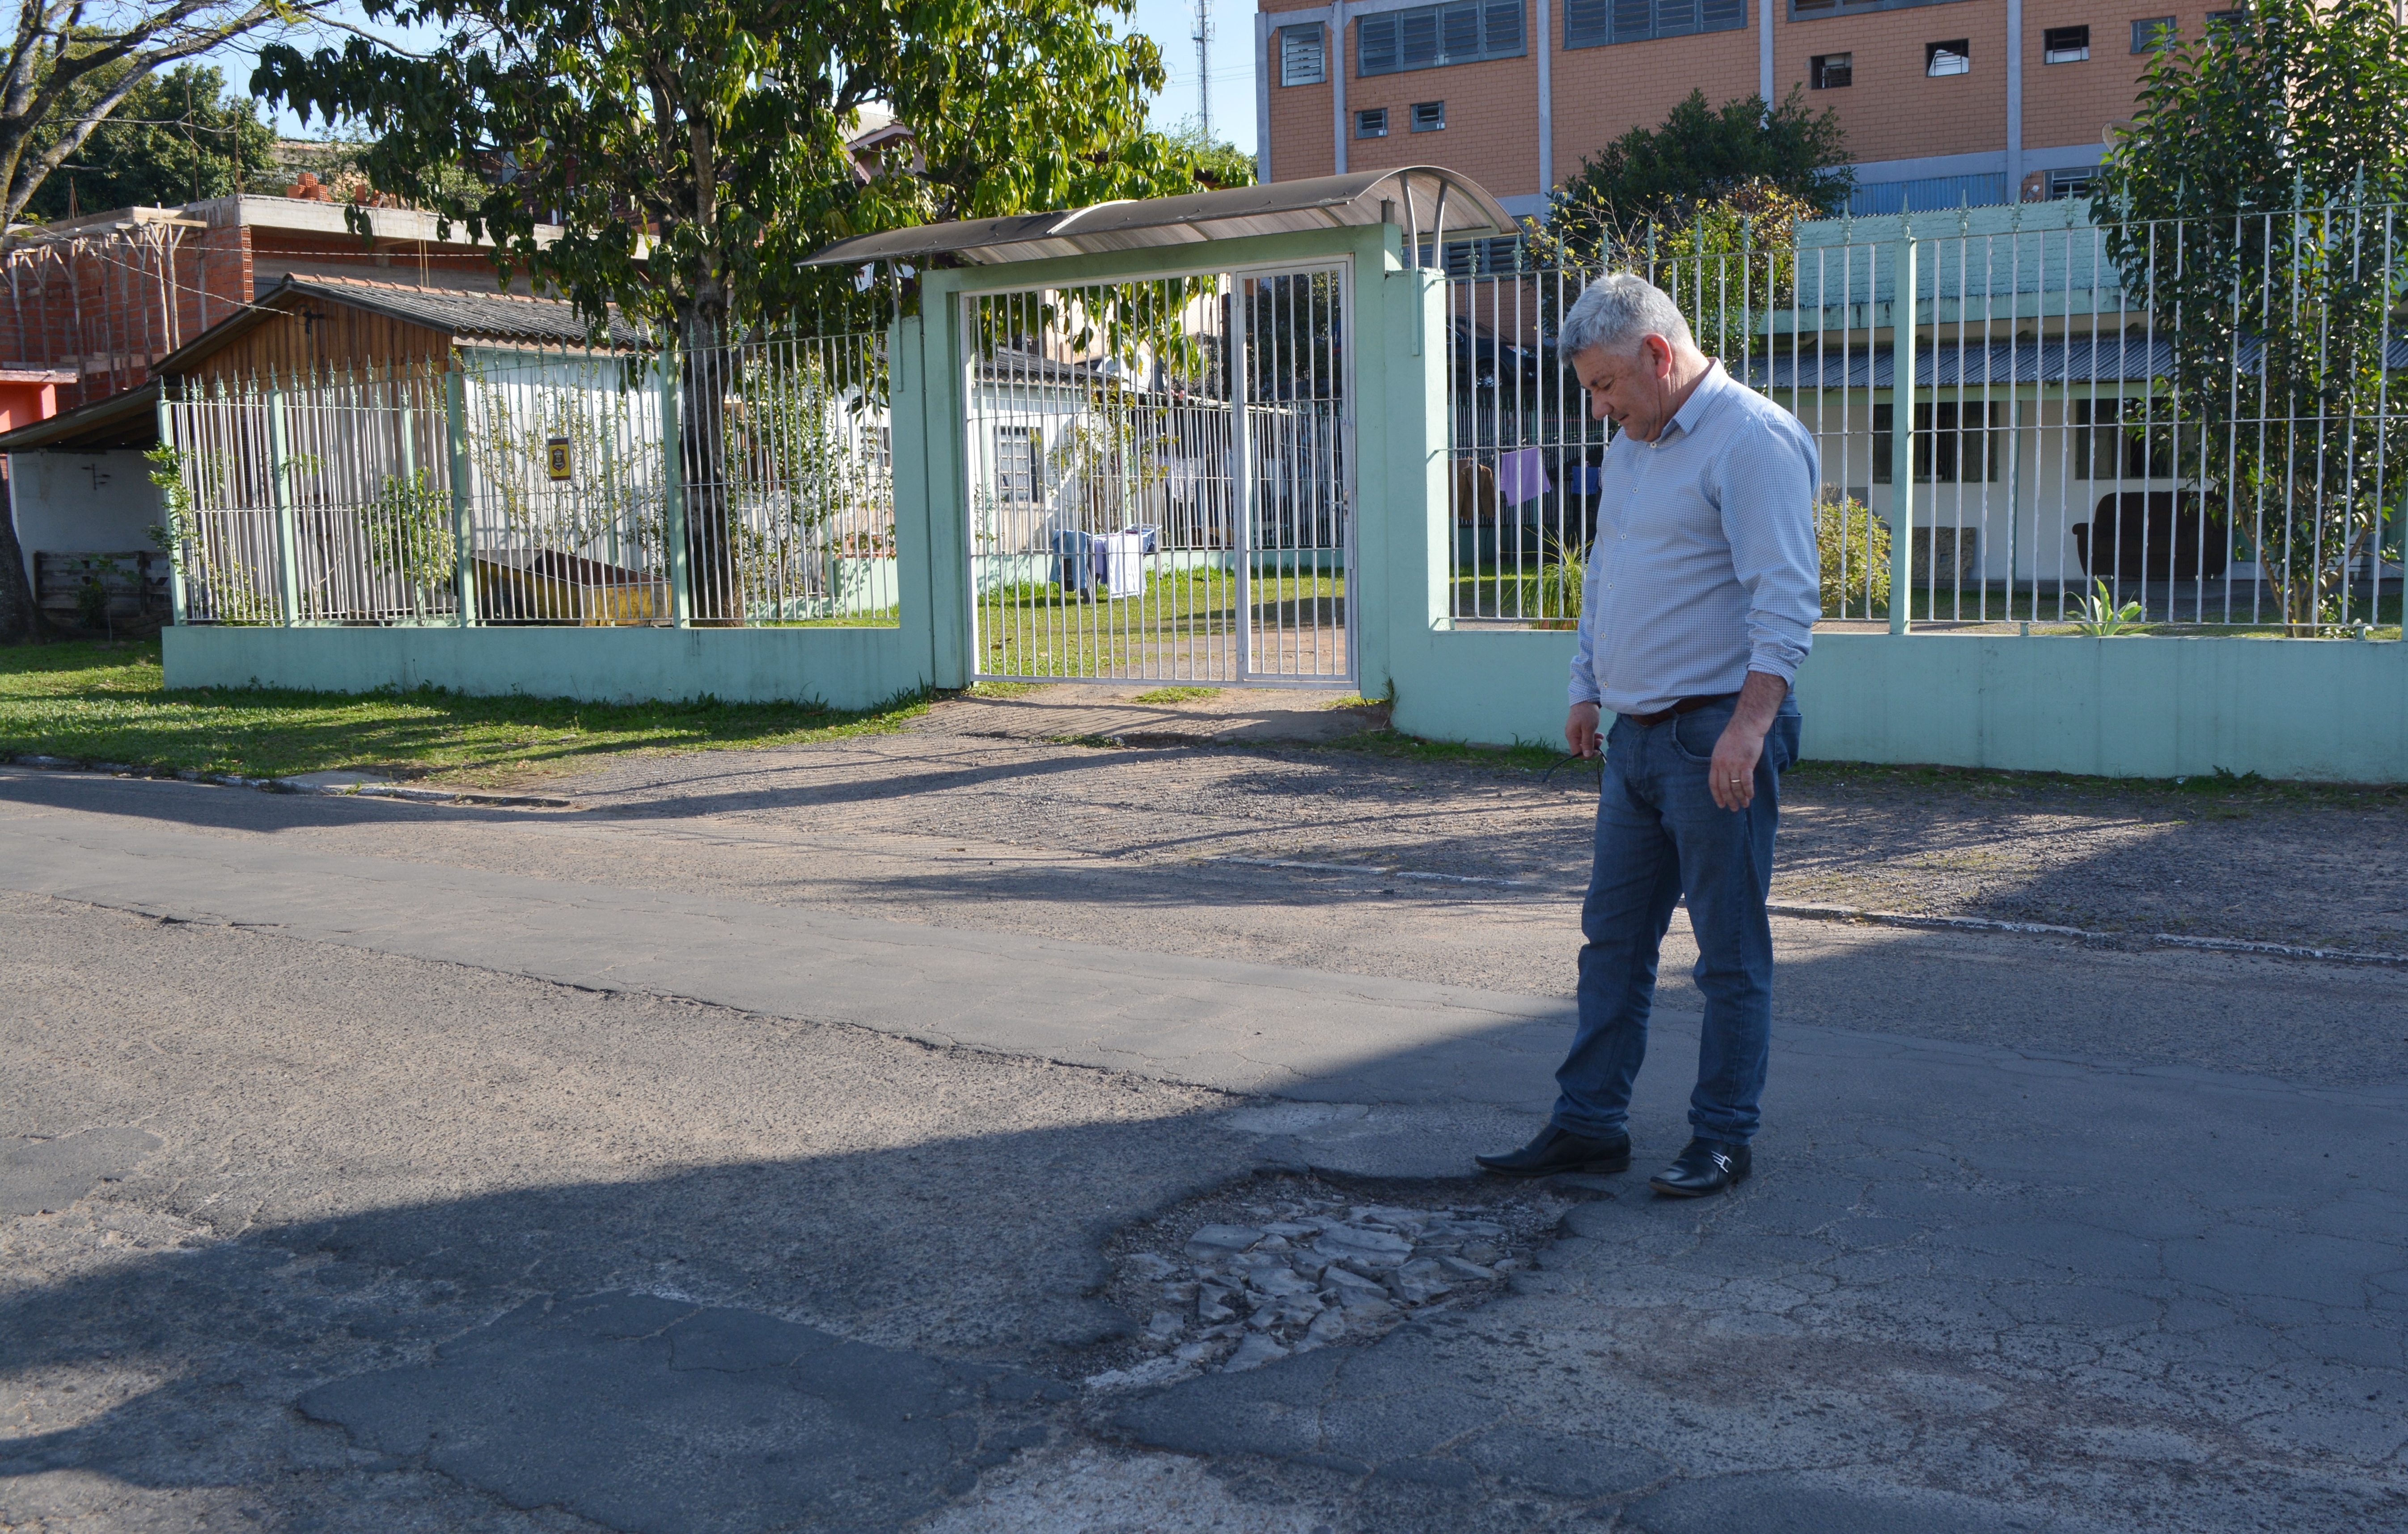 20/08/2018 - Vereador Nor Boeno pede operação tapa-buraco para rua próxima de escola em Canudos